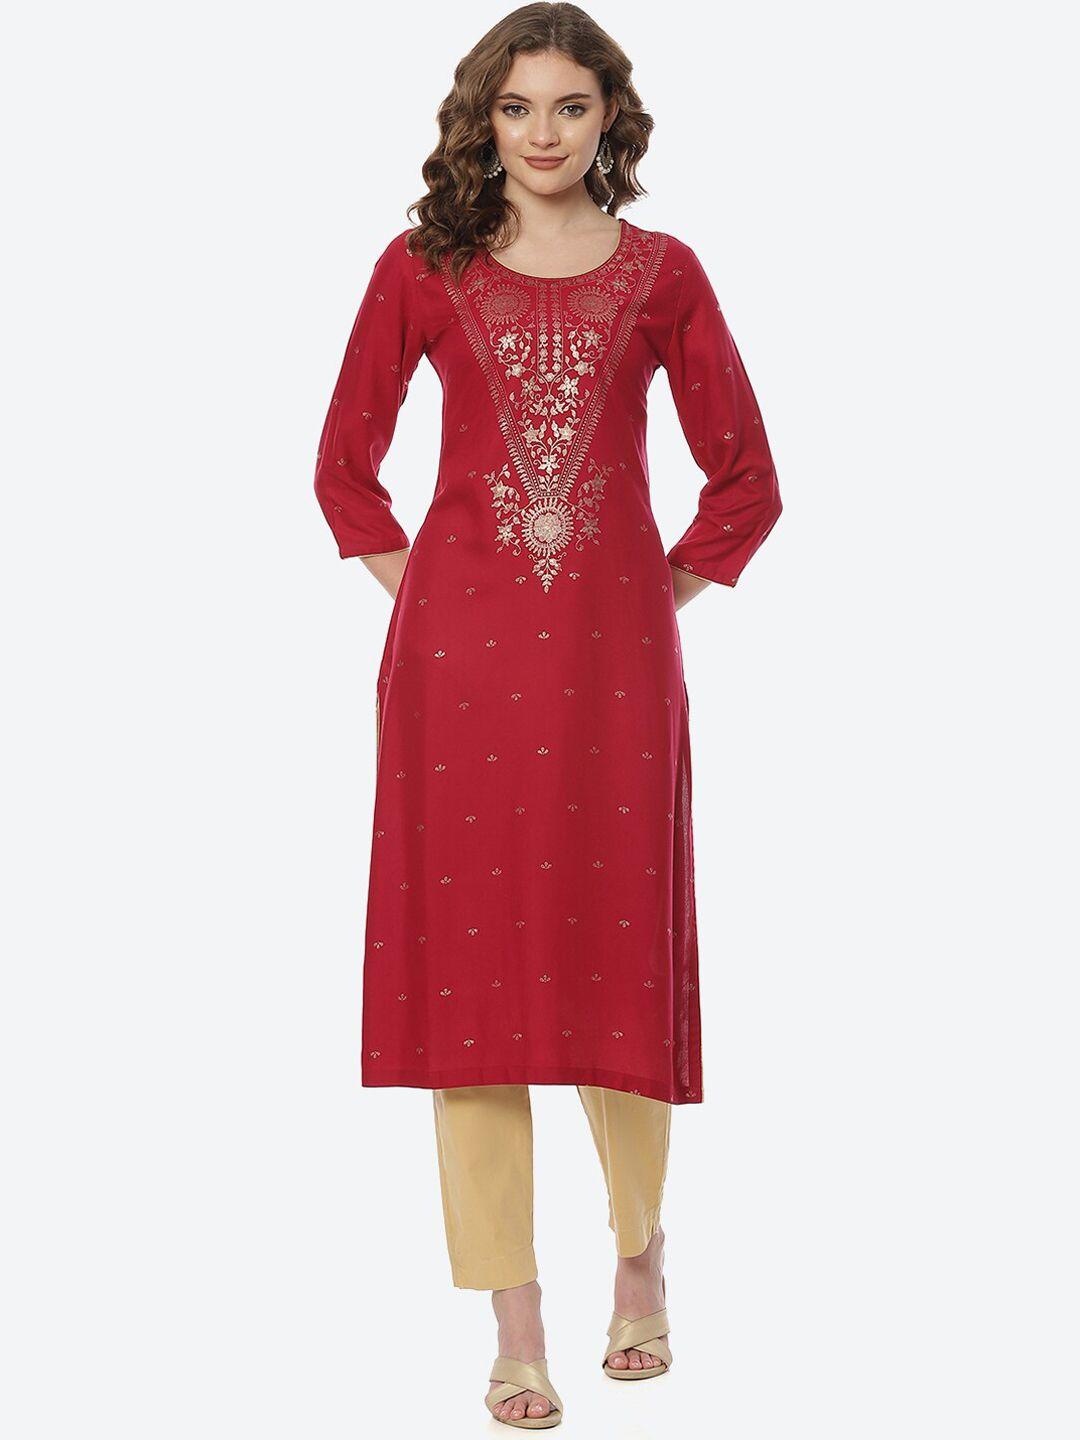 rangriti-women-red-floral-printed-kurta